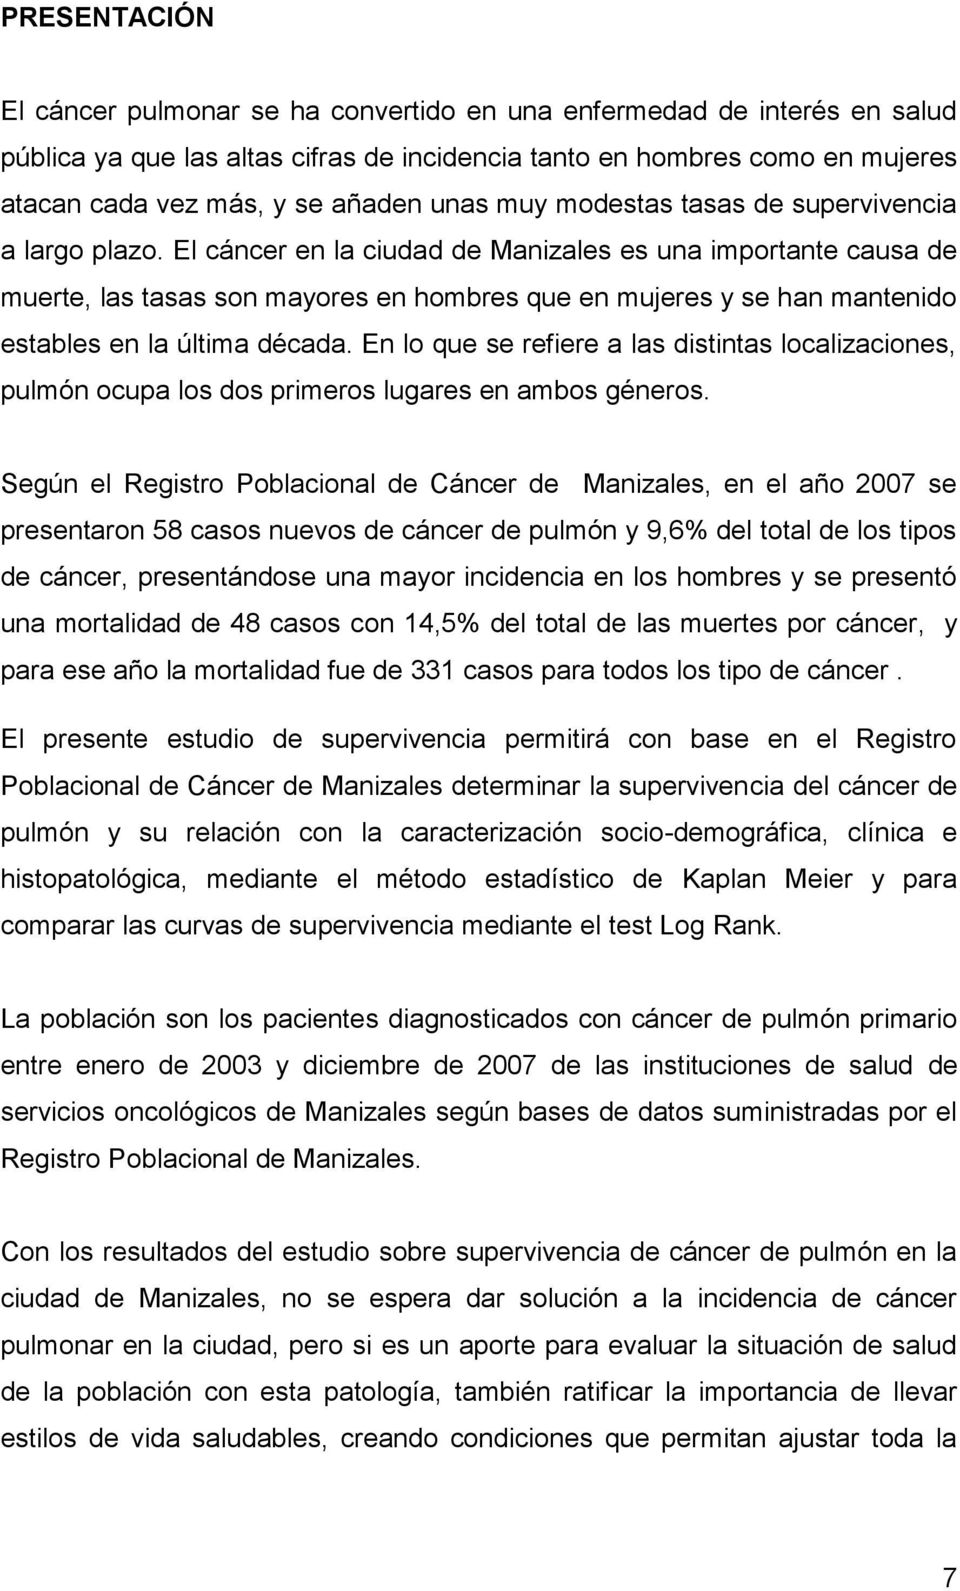 El cáncer en la ciudad de Manizales es una importante causa de muerte, las tasas son mayores en hombres que en mujeres y se han mantenido estables en la última década.